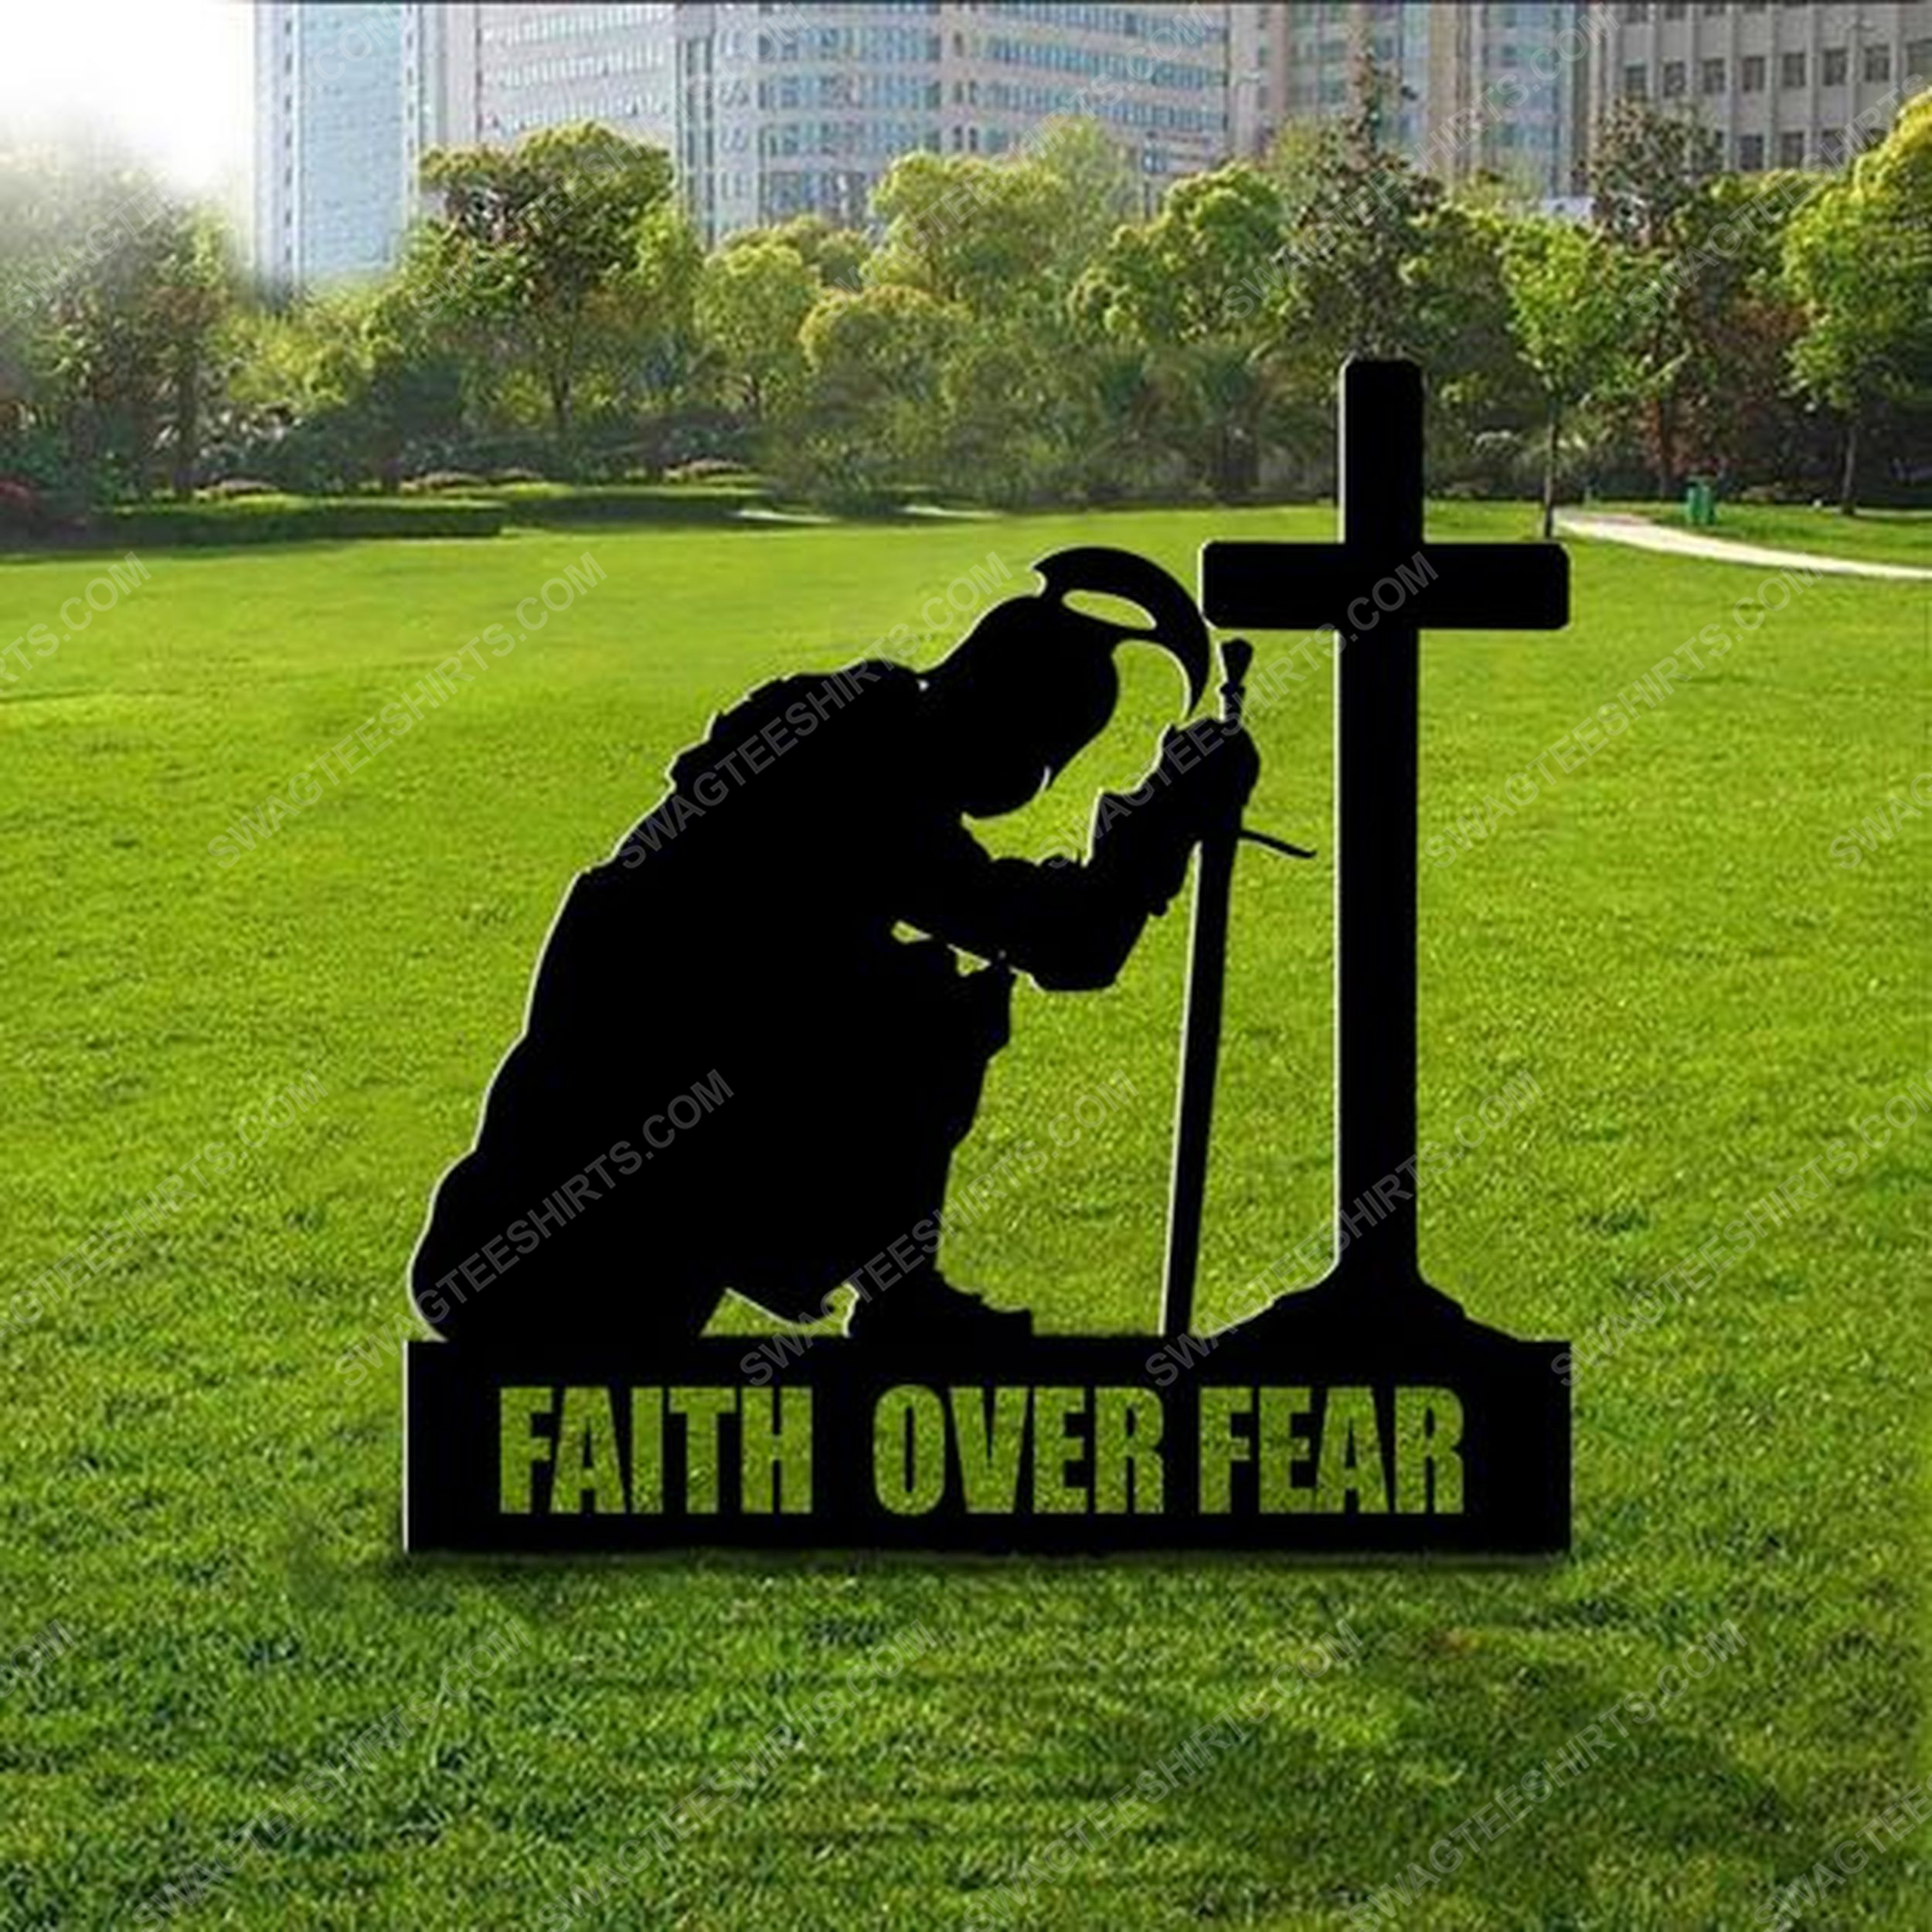 Patriotic christian spartan kneeling cross faith over fear yard sign 2(1)